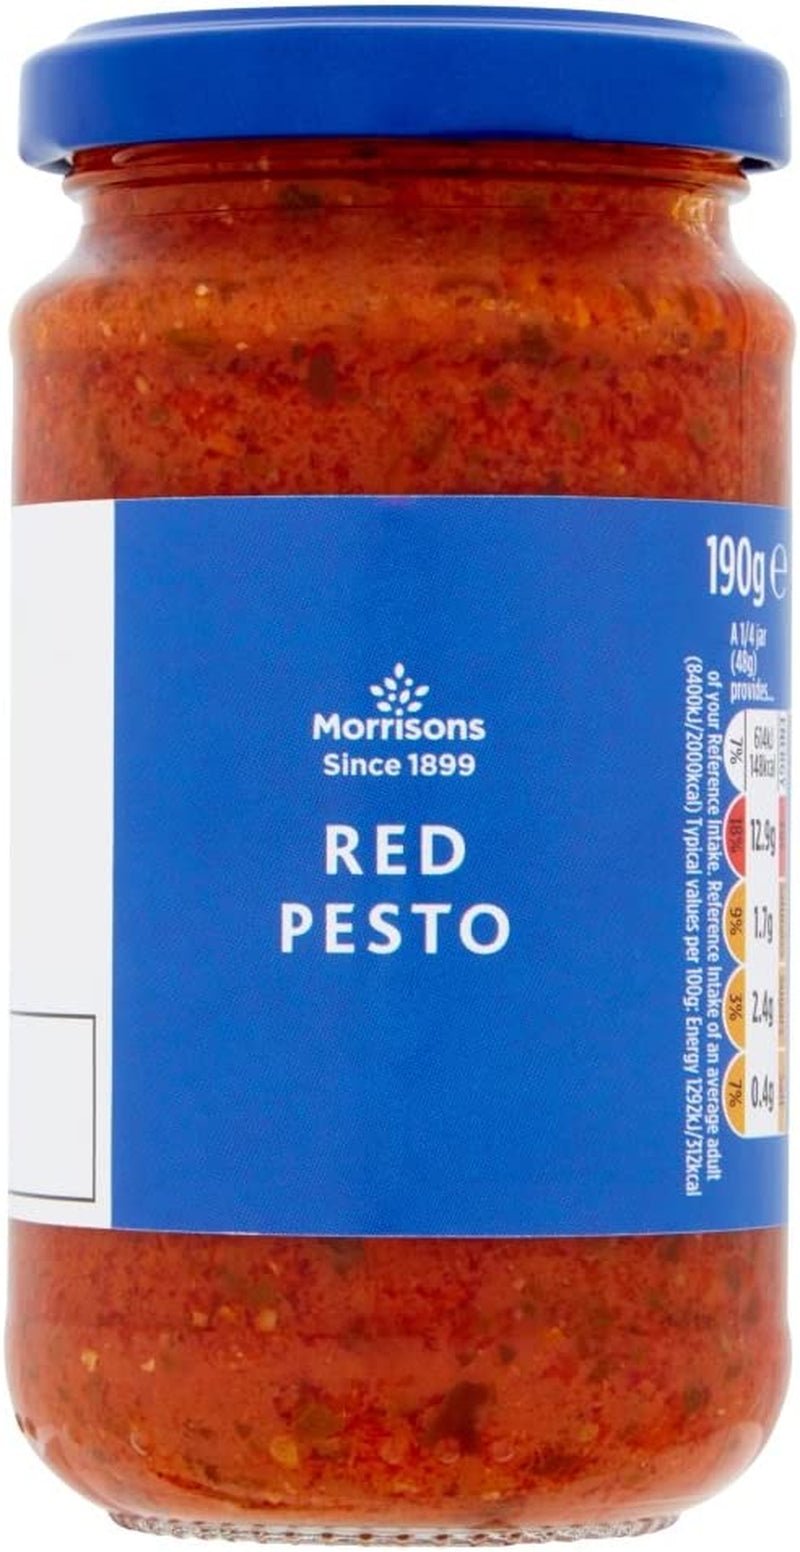 Red Pesto, 190G - FoxMart™️ - FoxMart™️